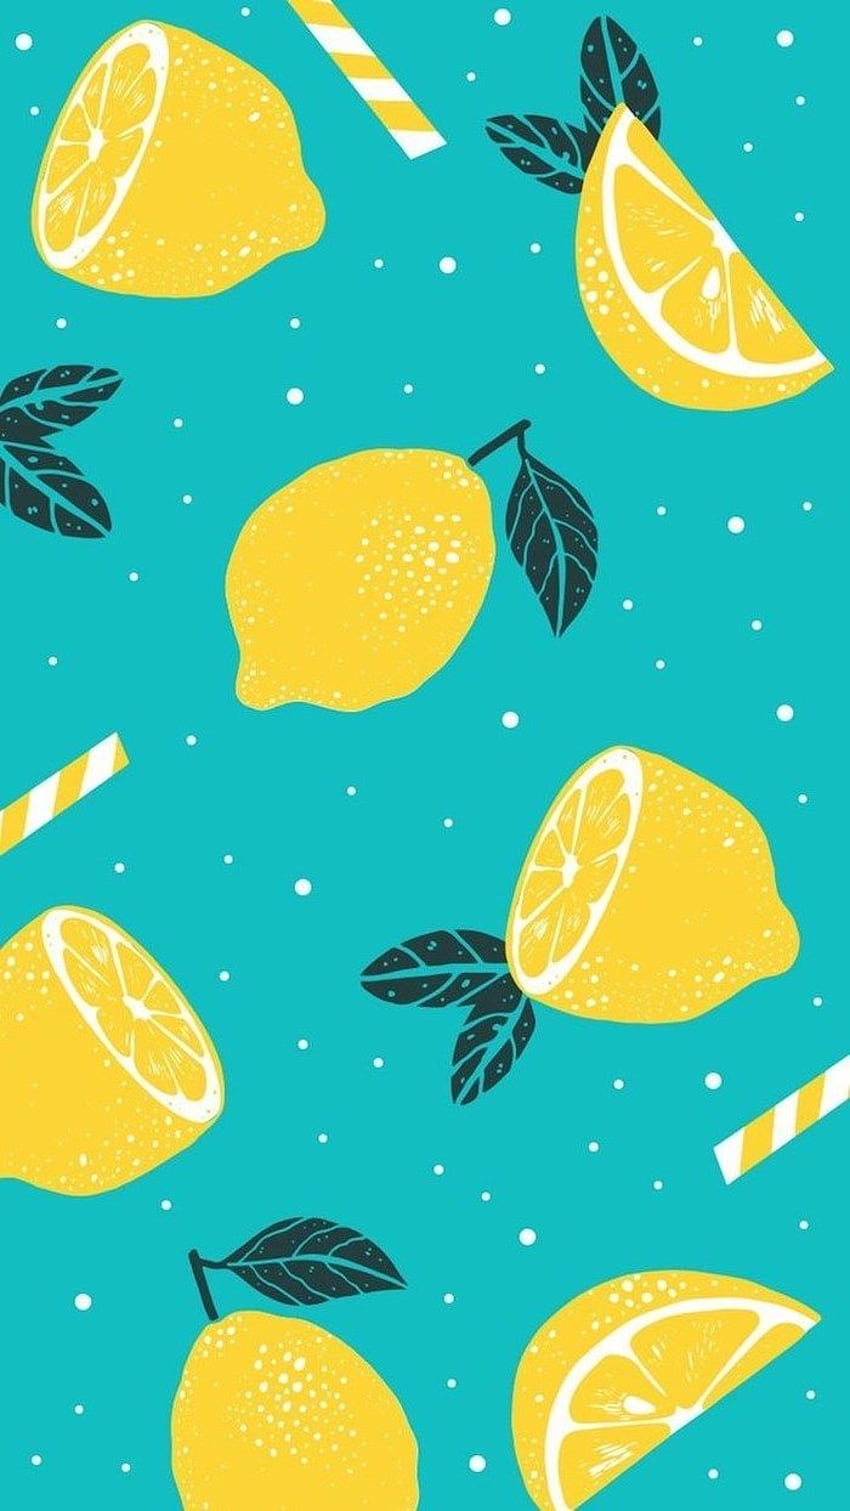 Rodajas De Limones Pajitas De Rayas Blancas Amarillas Dibujo Azul De Verano. Verano, Fruta, IPhone, Ilustración de verano fondo de pantalla del teléfono